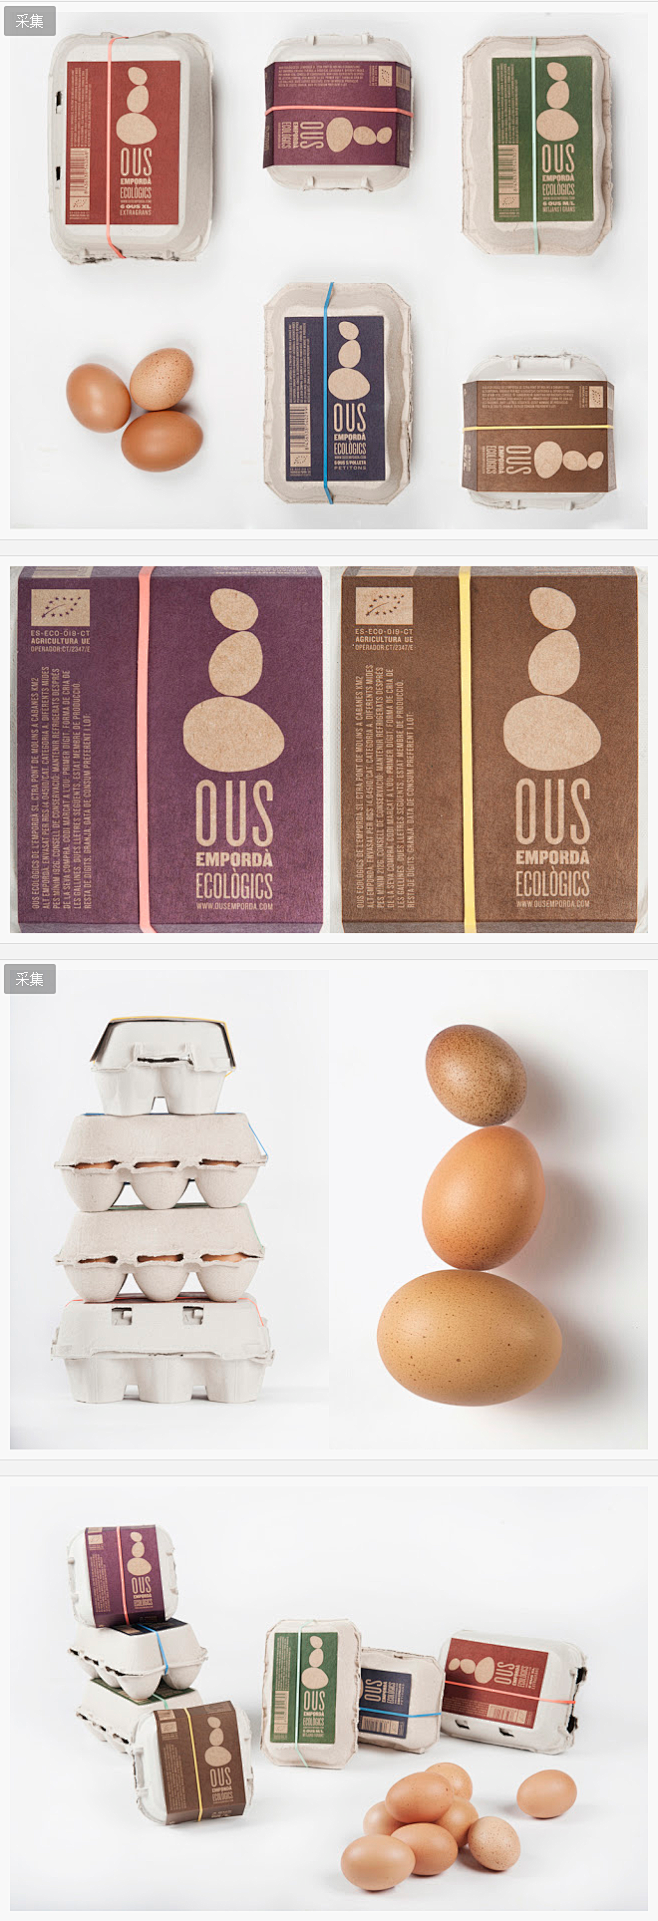 高端鸡蛋包装设计 - 食品包装 - 飞特...